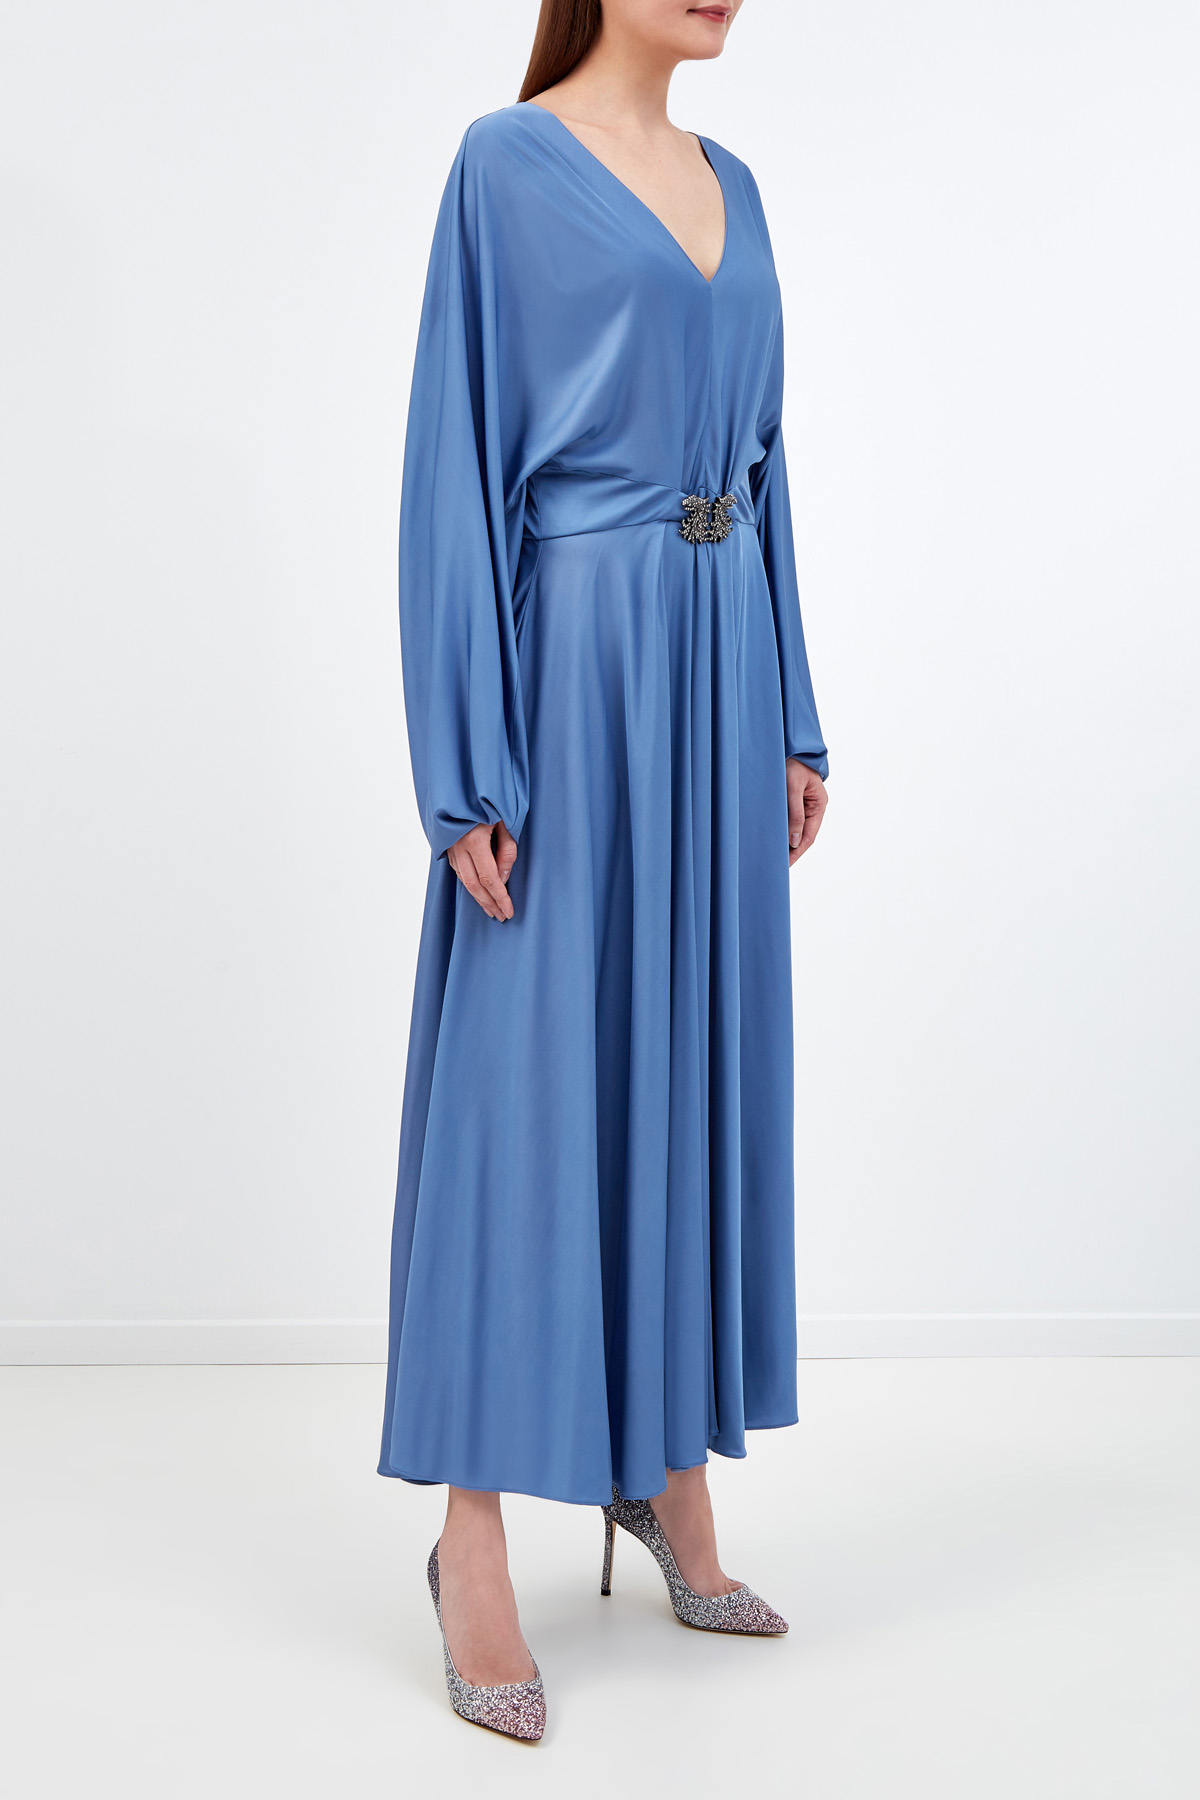 Струящееся платье с кейпом на спинке и подвеской с кристаллами VALENTINO, цвет синий, размер 44;46;42 - фото 3